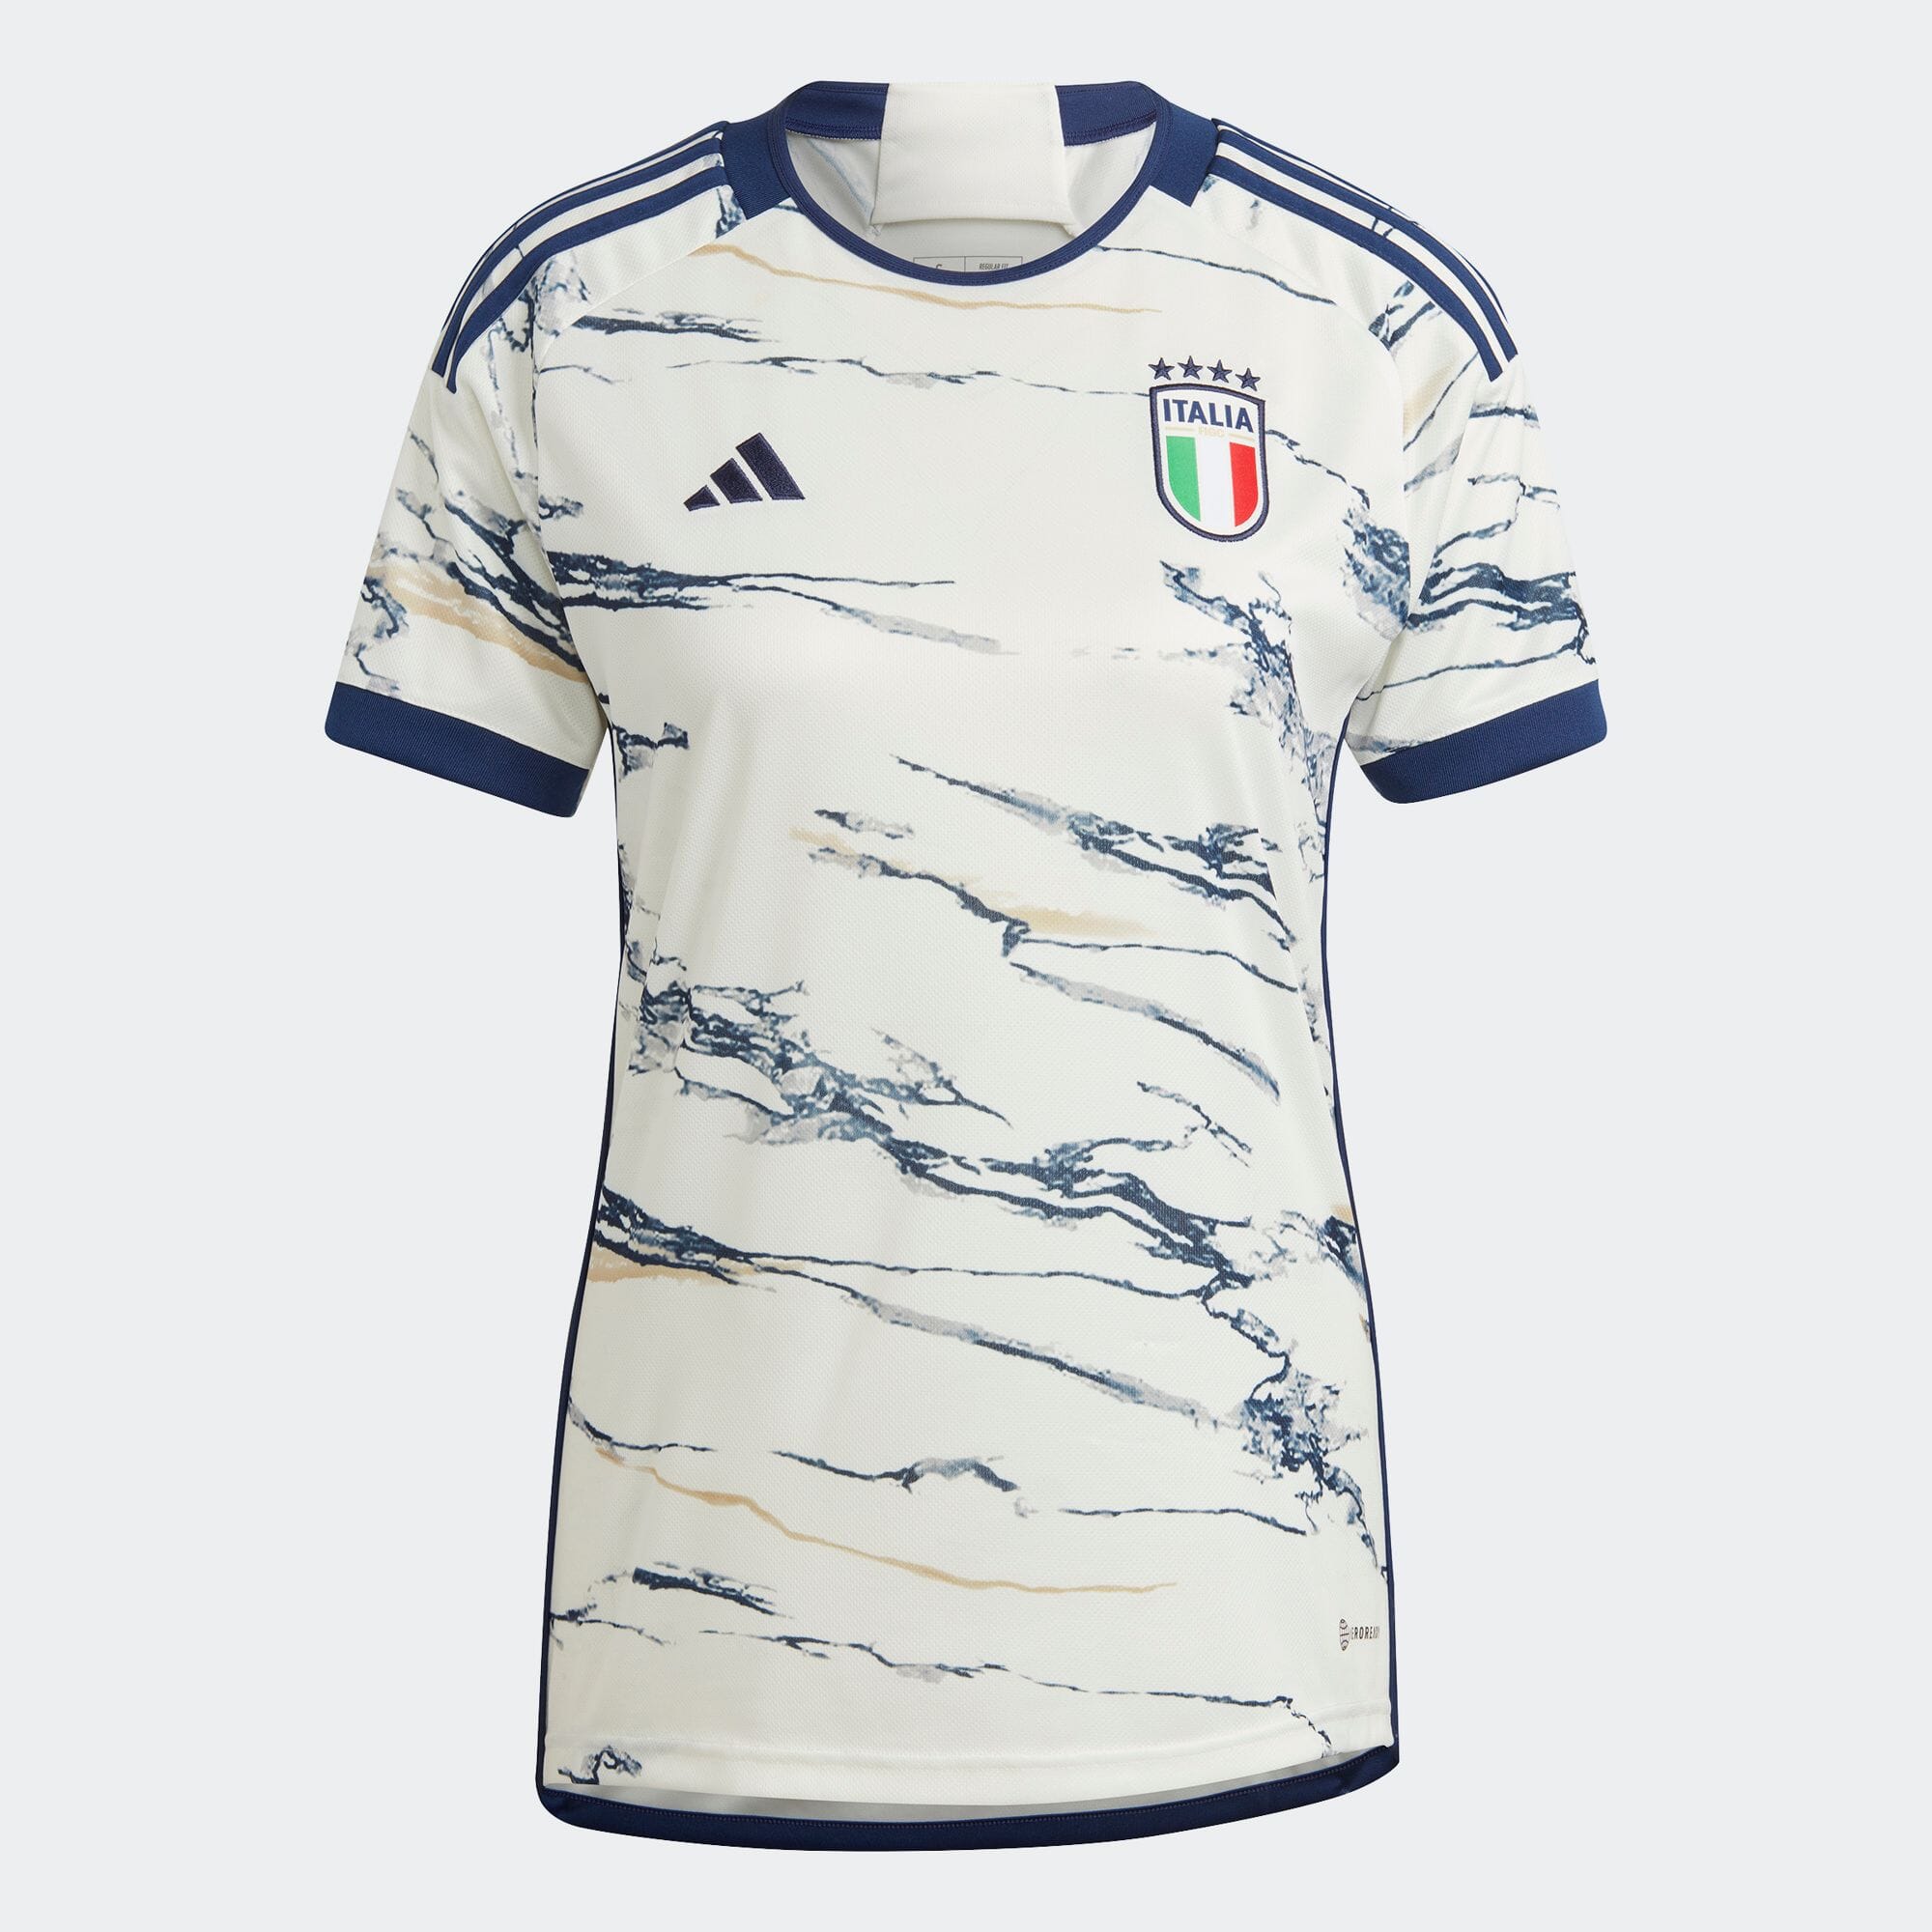 イタリア代表 23 アウェイユニフォーム レディース サッカー|フットサル